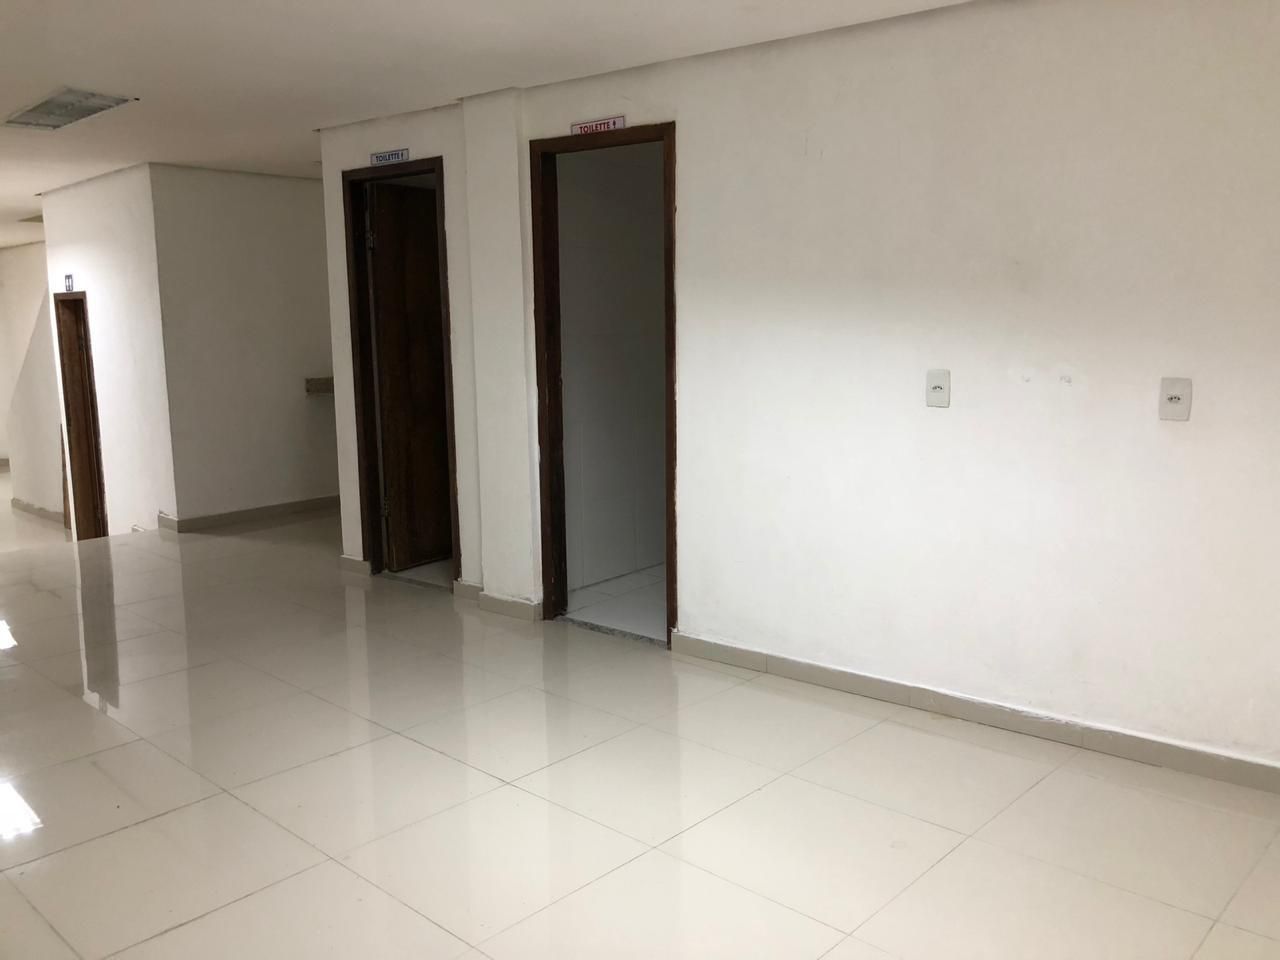 Sala para alugar, 80 m² por RS 2.500-mês - Centro - Manaus-AM